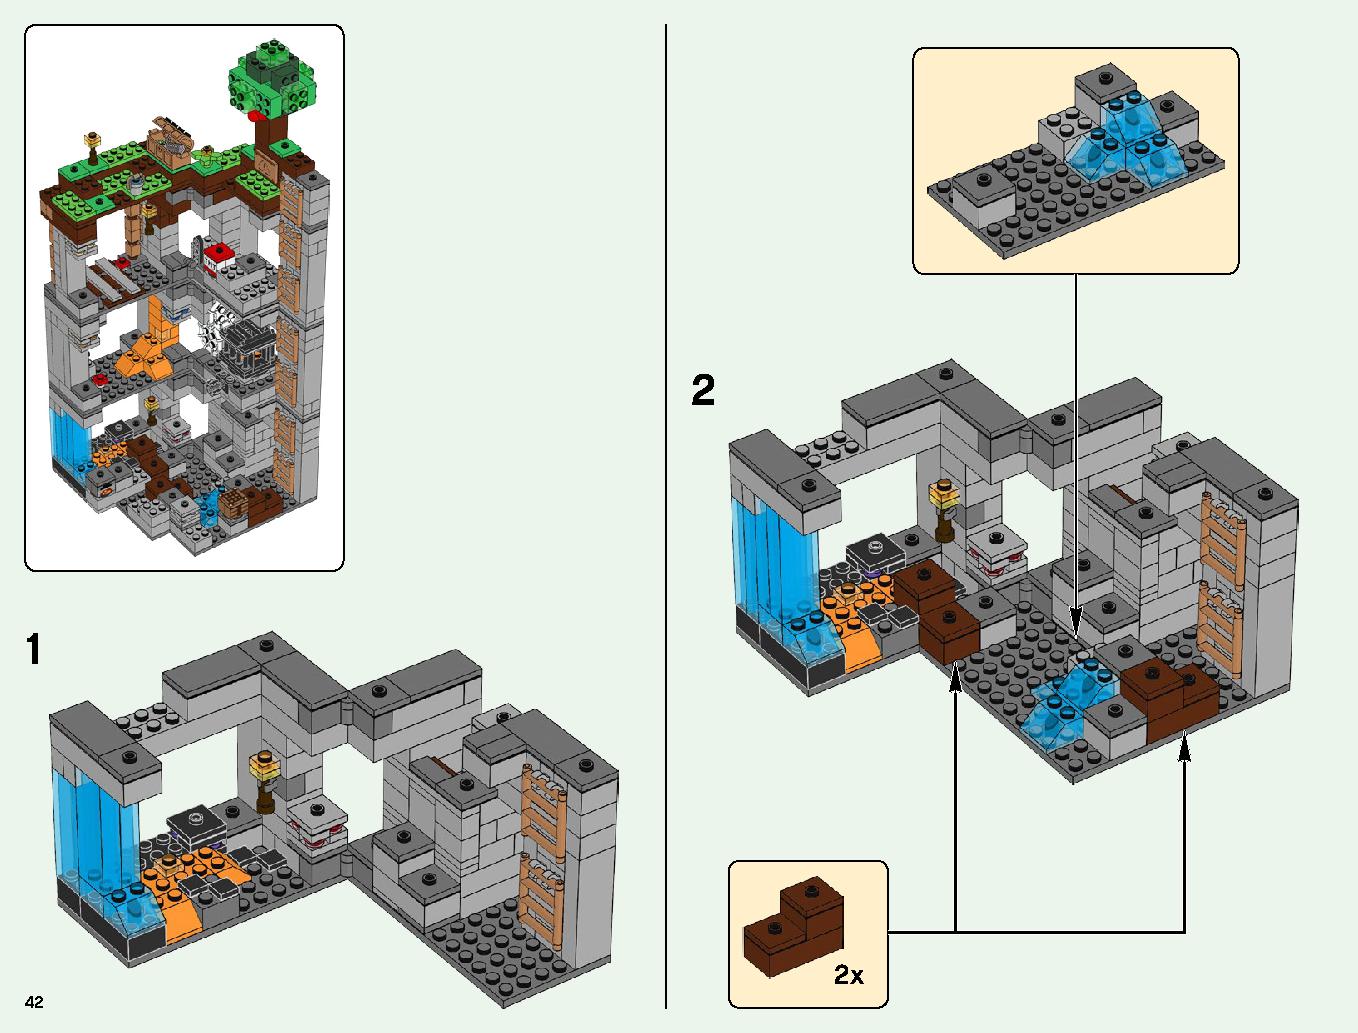 ベッドロックの冒険 21147 レゴの商品情報 レゴの説明書・組立方法 42 page